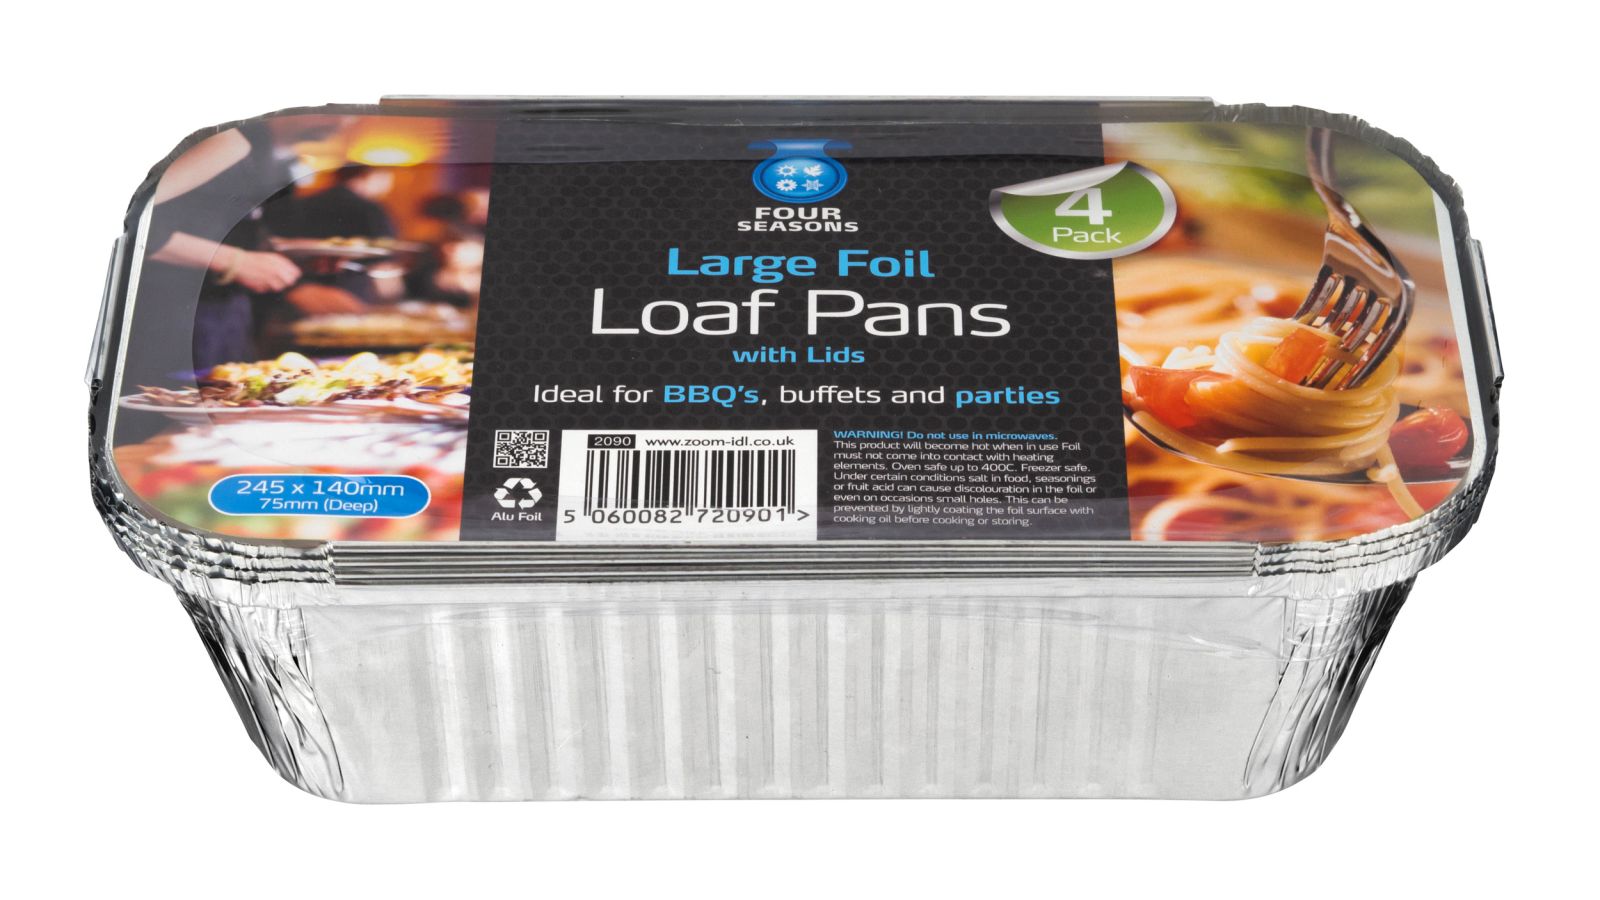 Pack 4, large foil loaf tins*
(245x140x75mm)